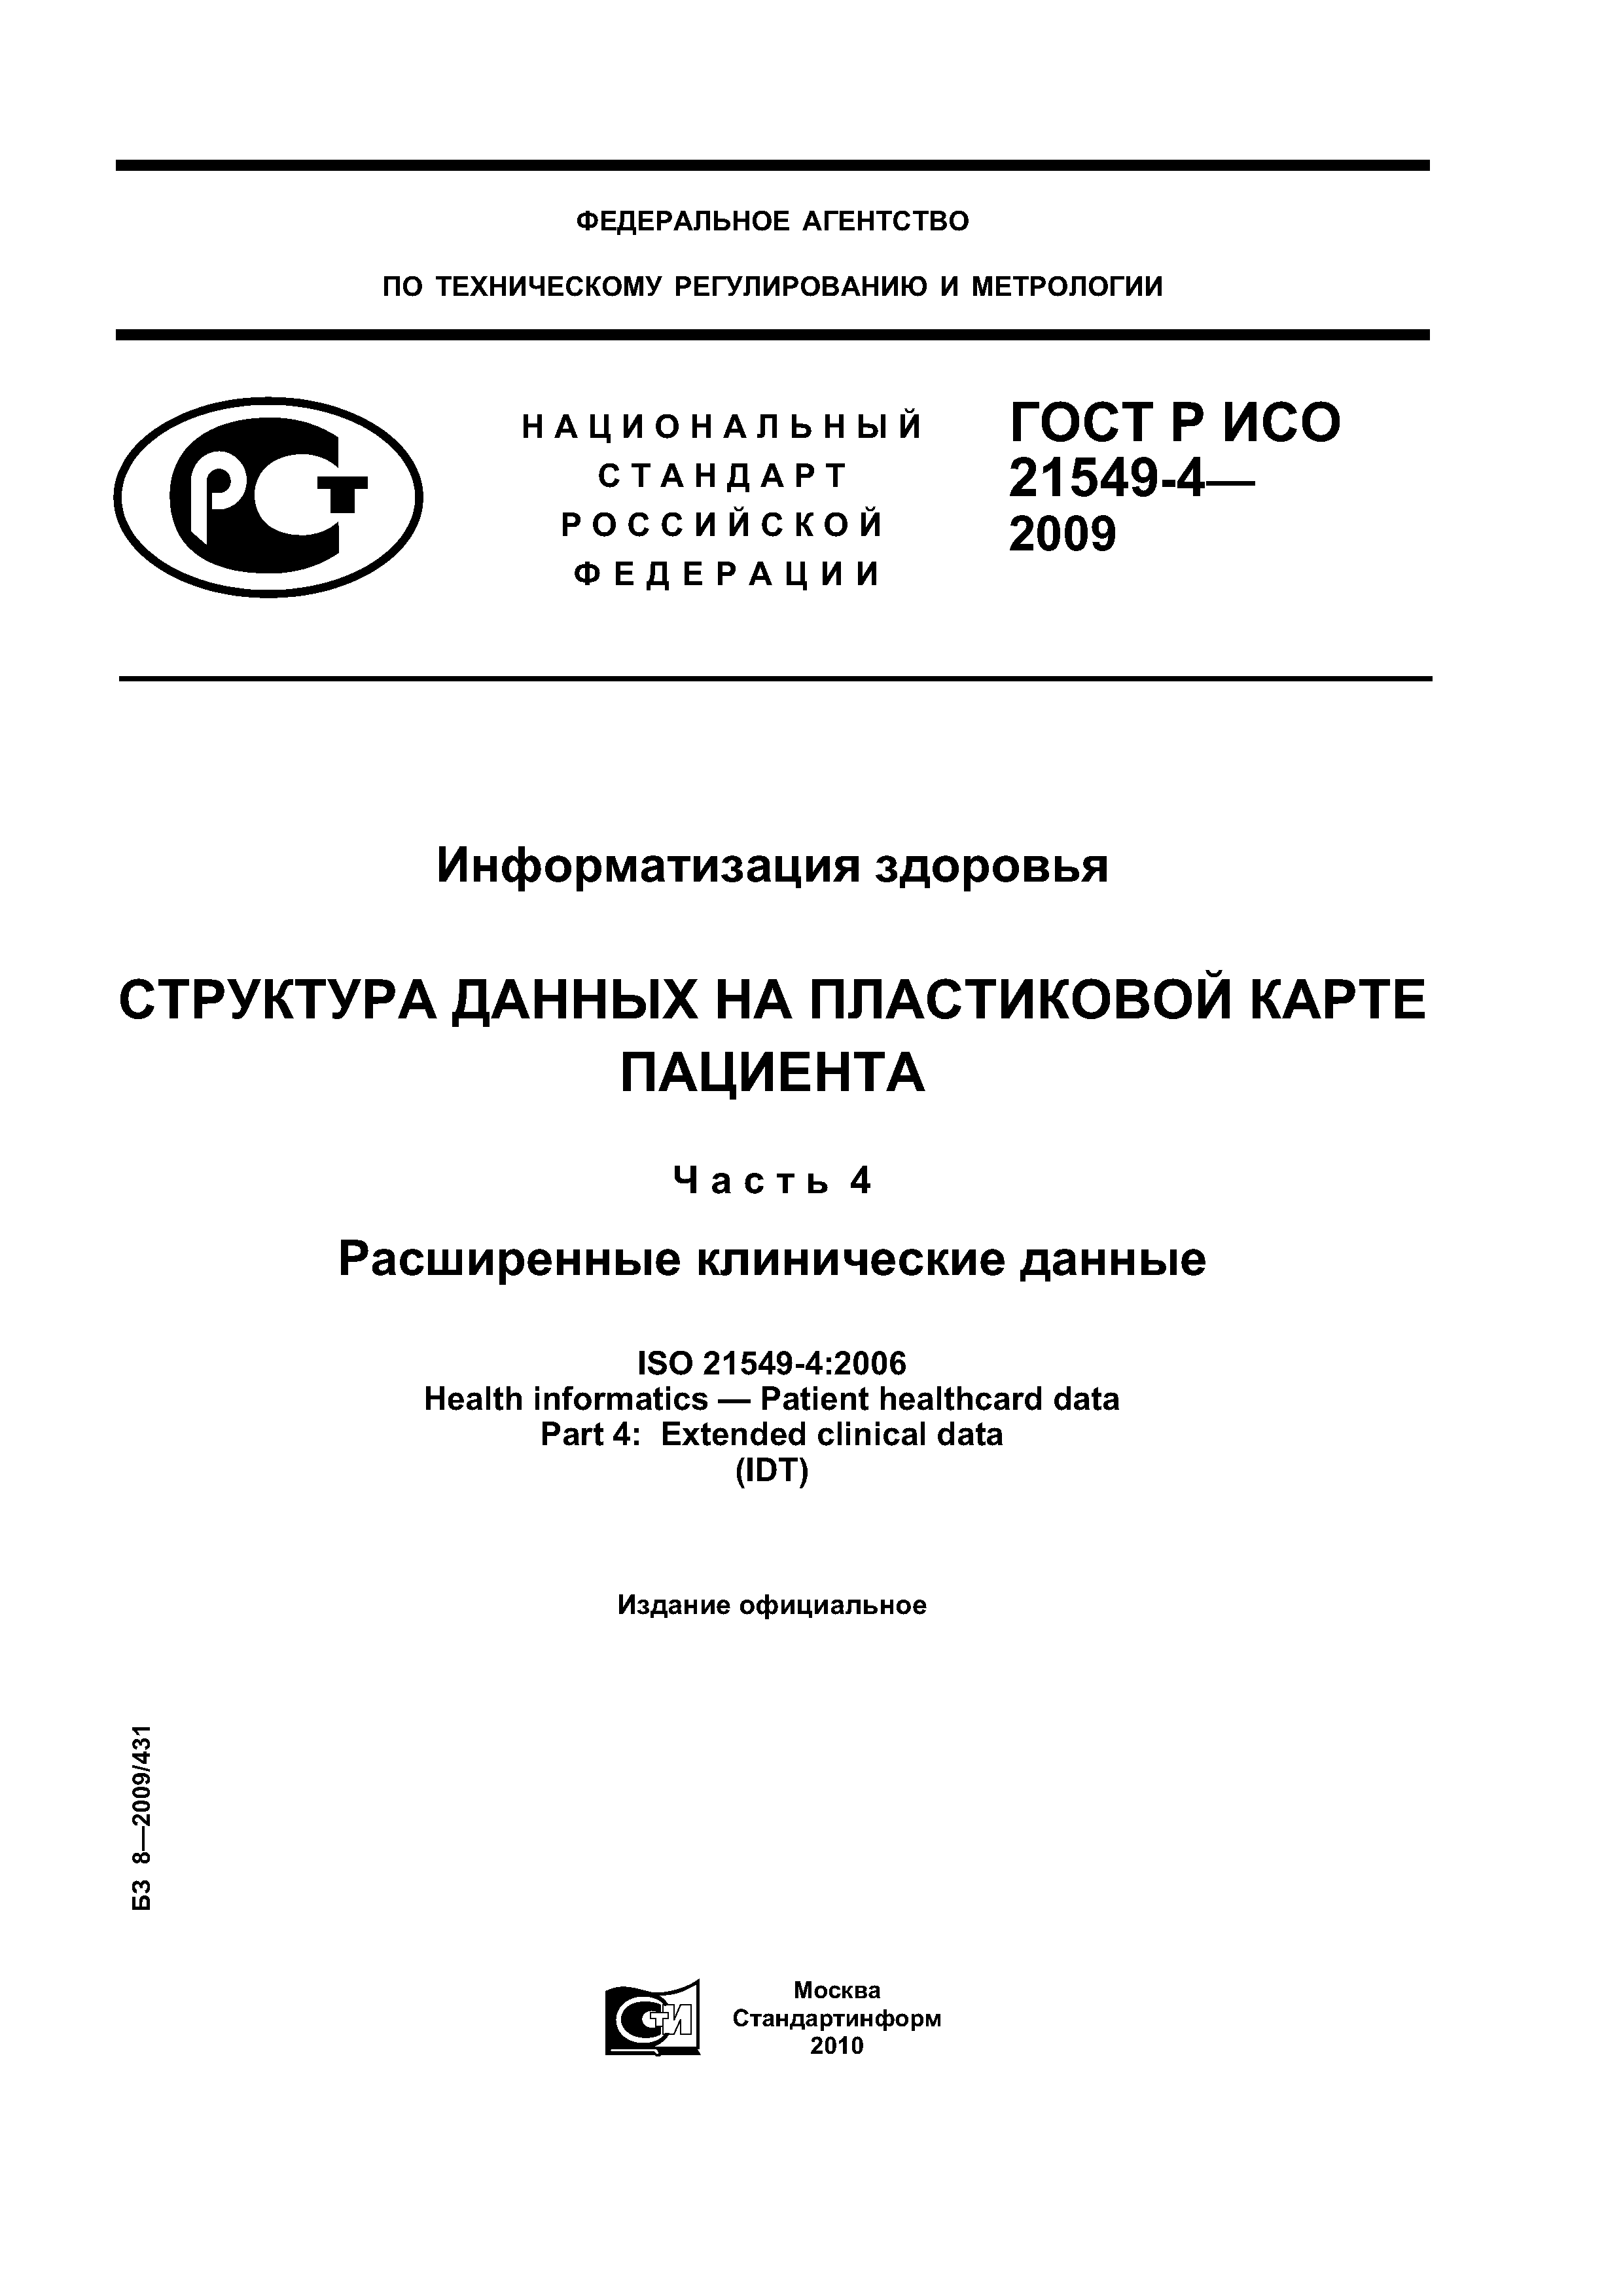 ГОСТ Р ИСО 21549-4-2009